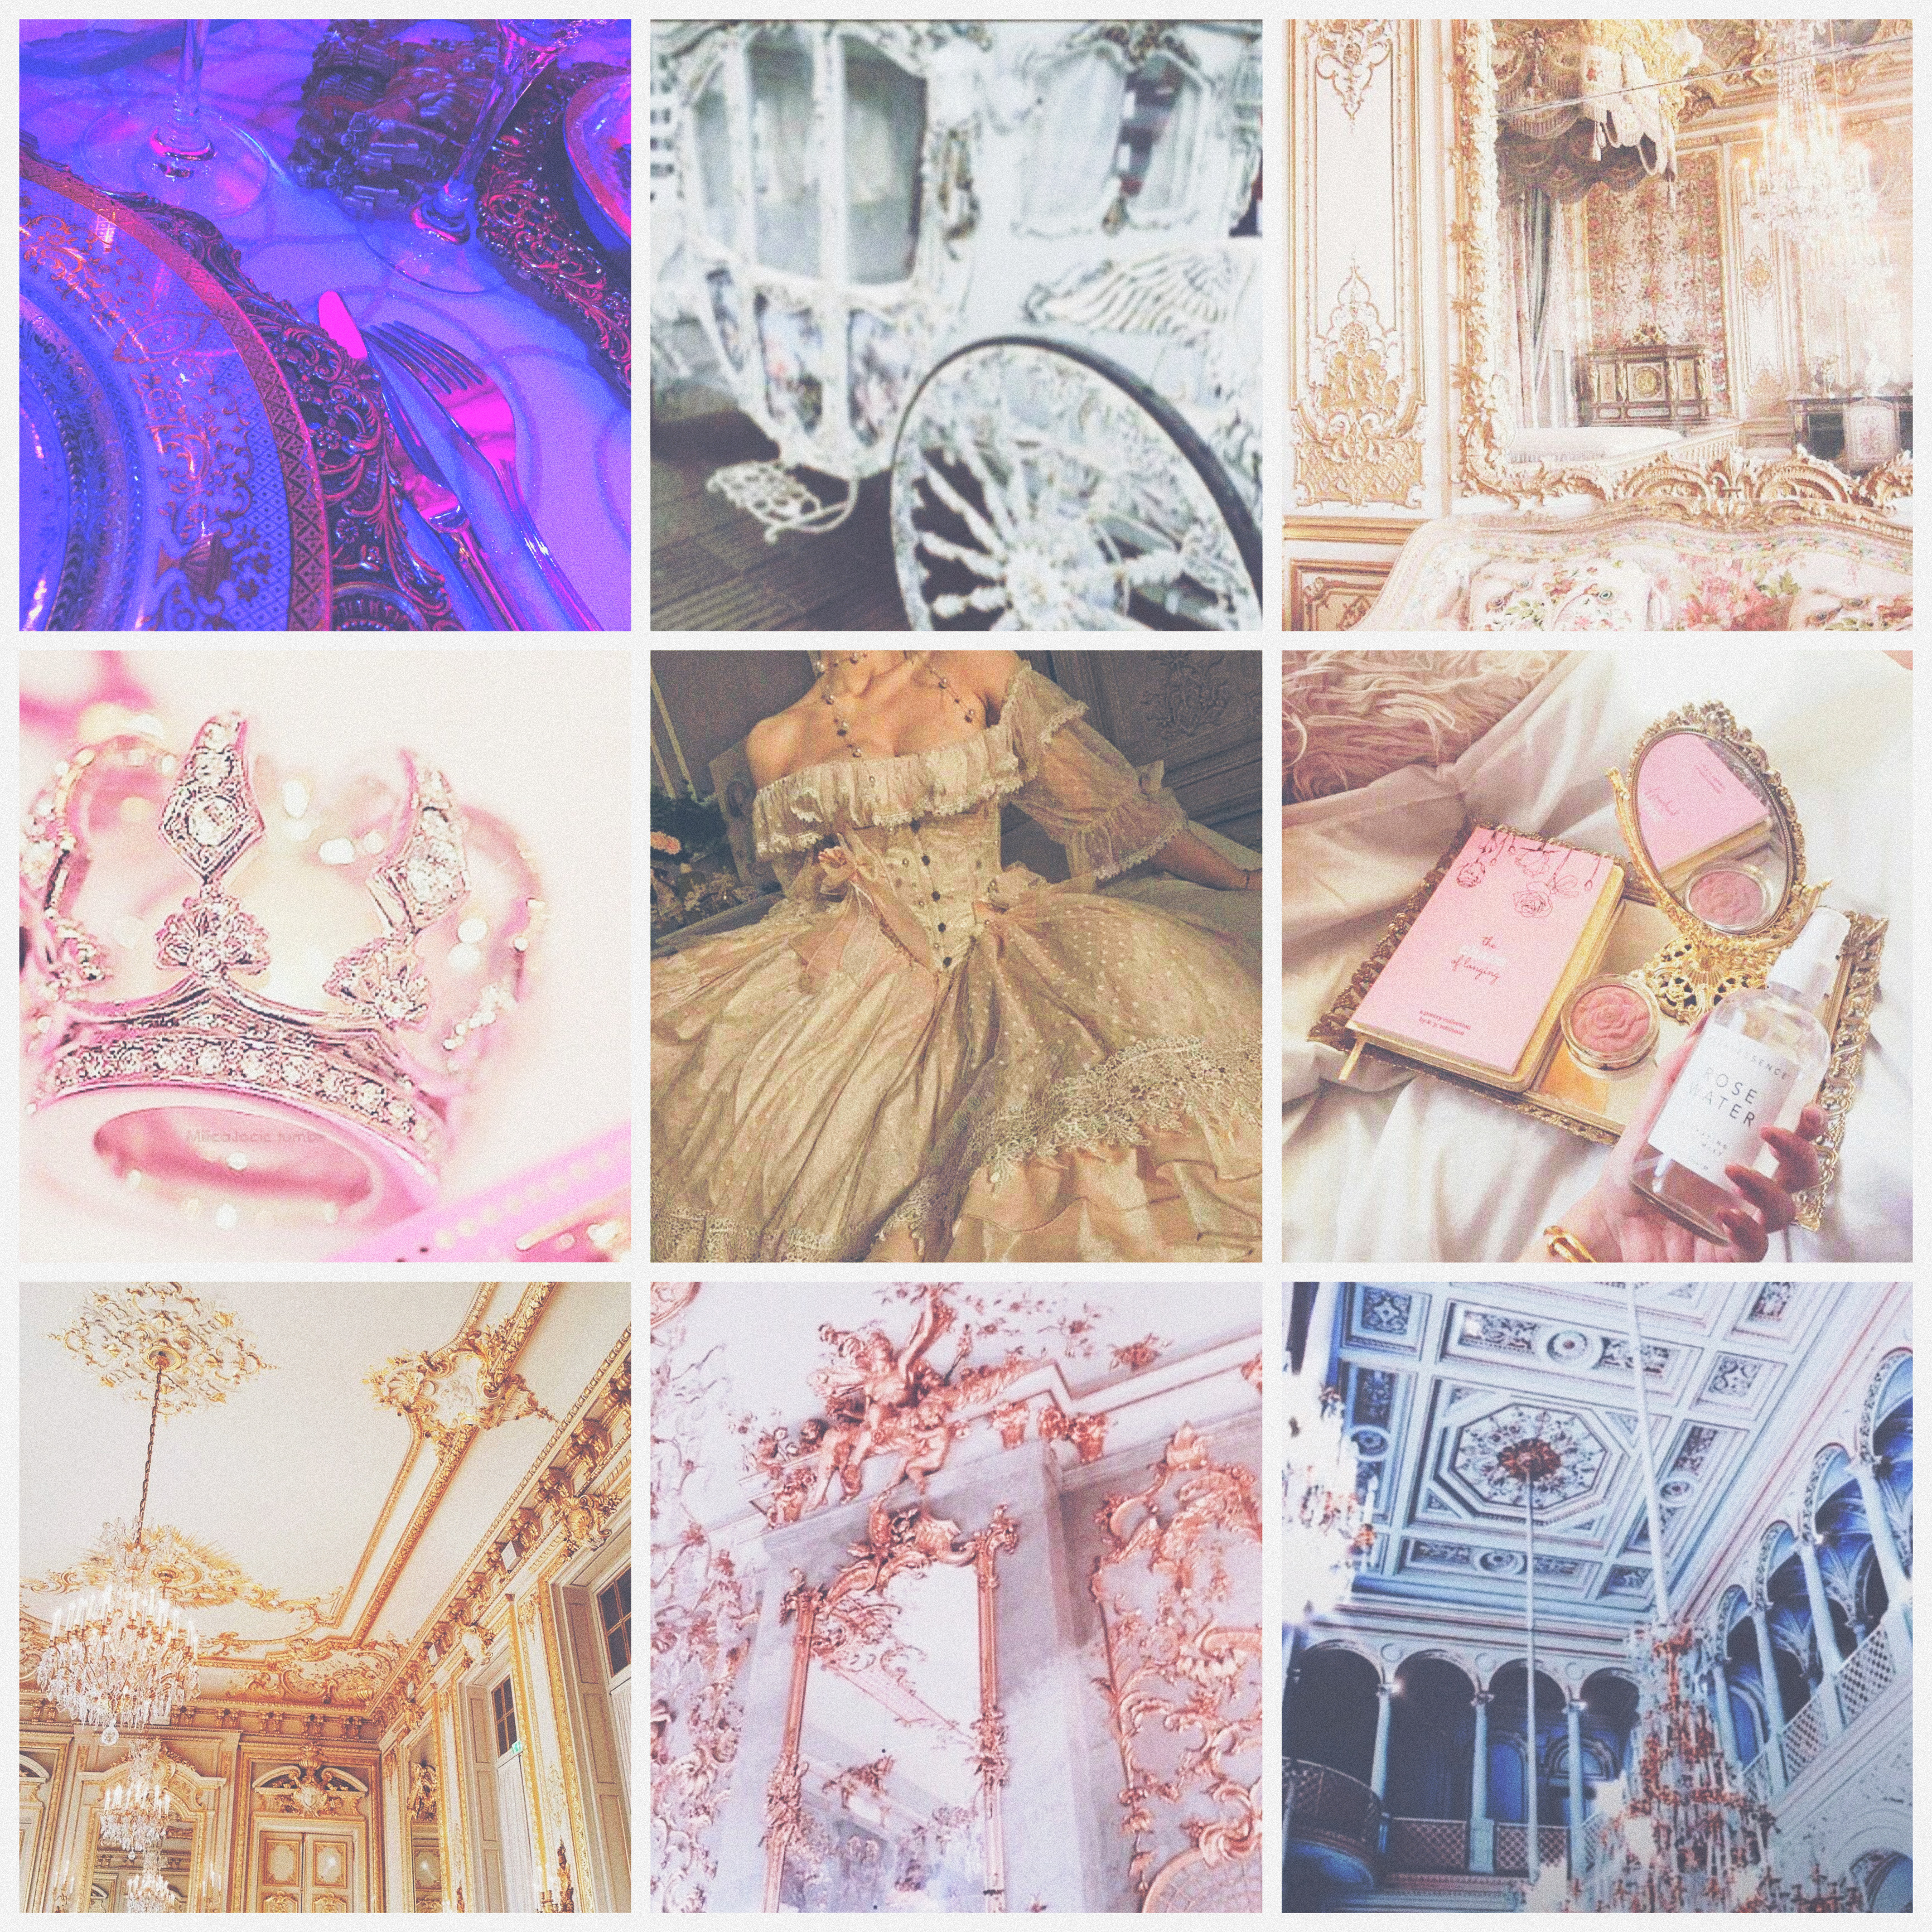 Pink princess aesthetic  Princess aesthetic, Princess core, Pink princess  aesthetic